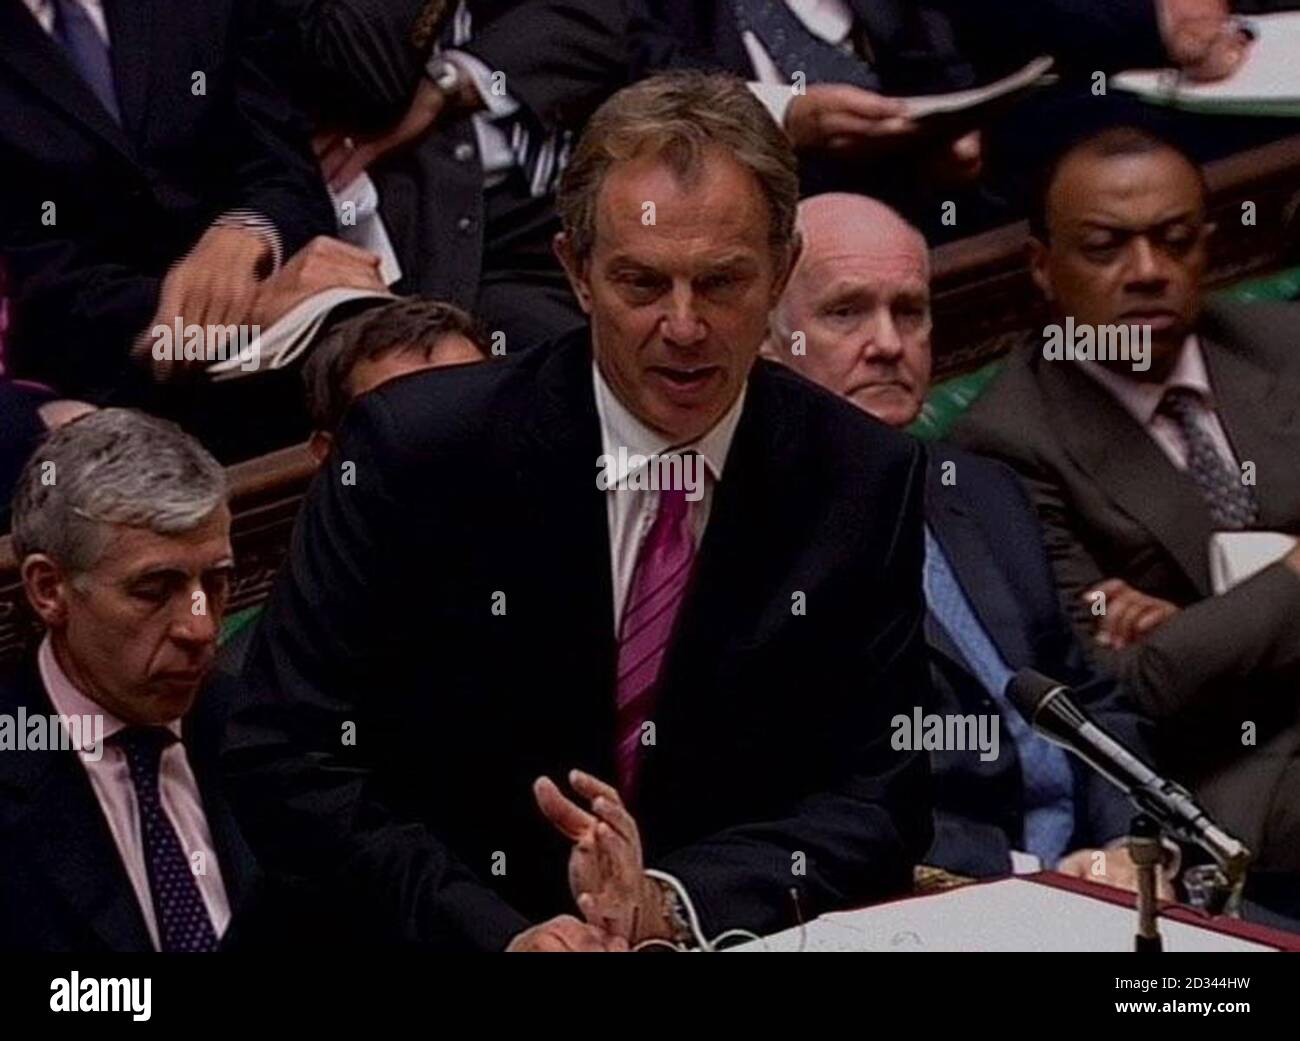 Der britische Premierminister Tony Blair während seiner wöchentlichen Fragestunde im Unterhaus in London. Wir werden darauf hingewiesen, dass Videoaufnahmen nicht später als 48 Stunden nach der Ausstrahlung des Programms von Tageszeitungen verwendet werden dürfen, ohne dass der Urheberrechtsinhaber seine Zustimmung erteilt hat. ALLE FERNSEHER UND INTERNET-AUSGANG. Stockfoto